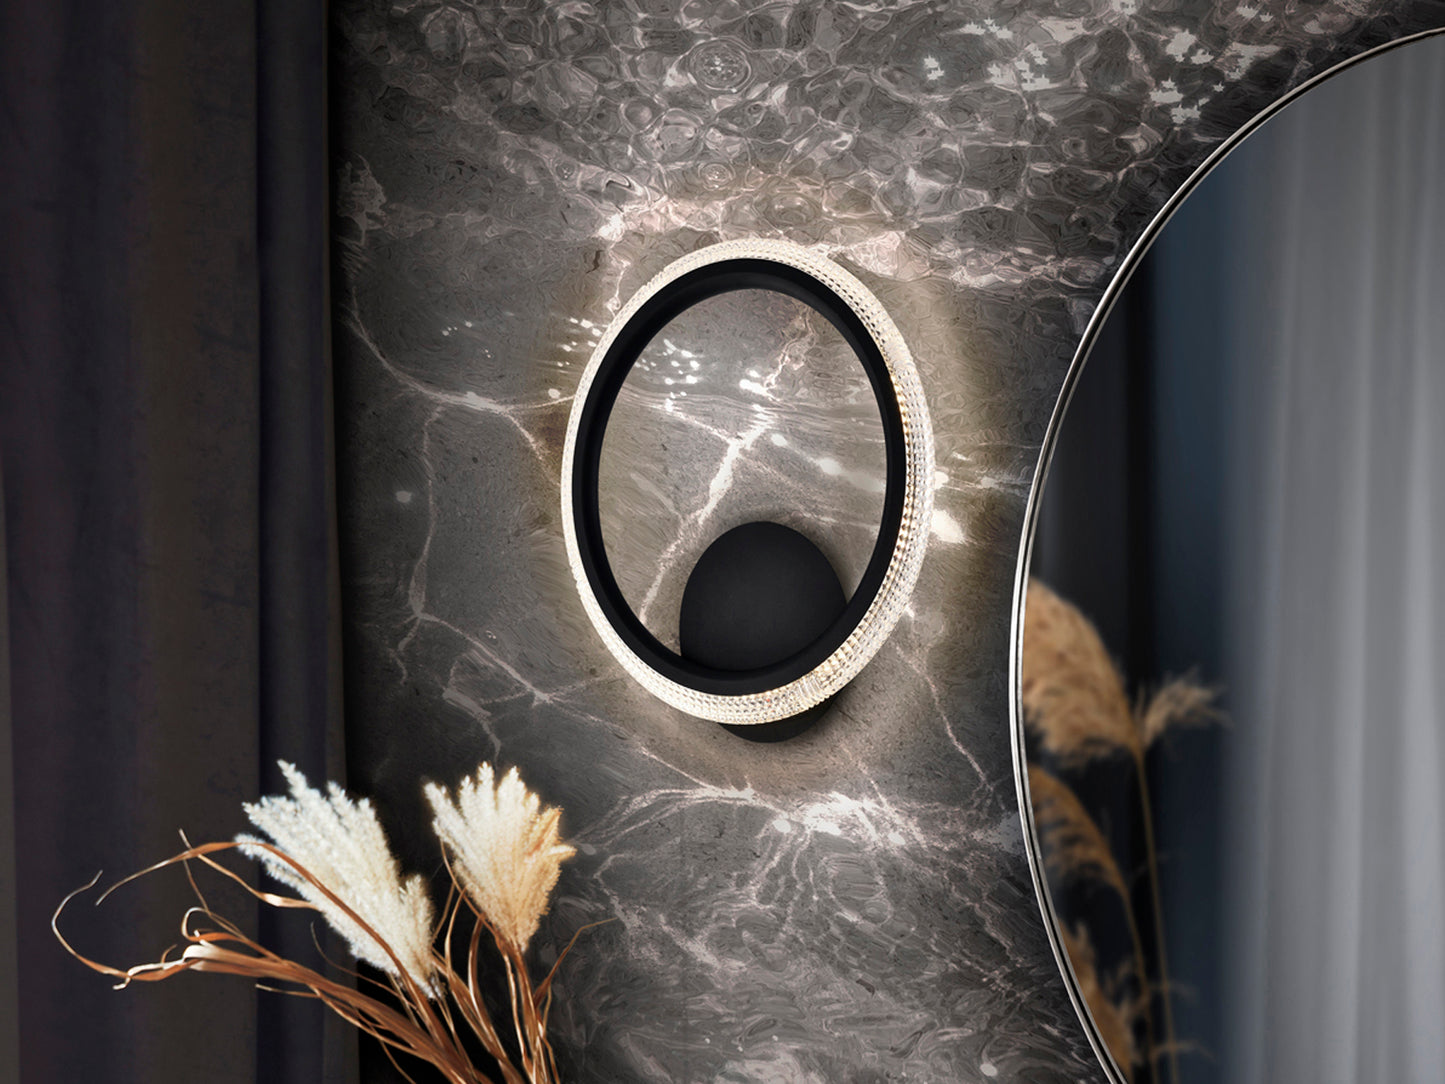 Plafon Ring 1 Aro Negro - Plafones de Techo - Granada Maison